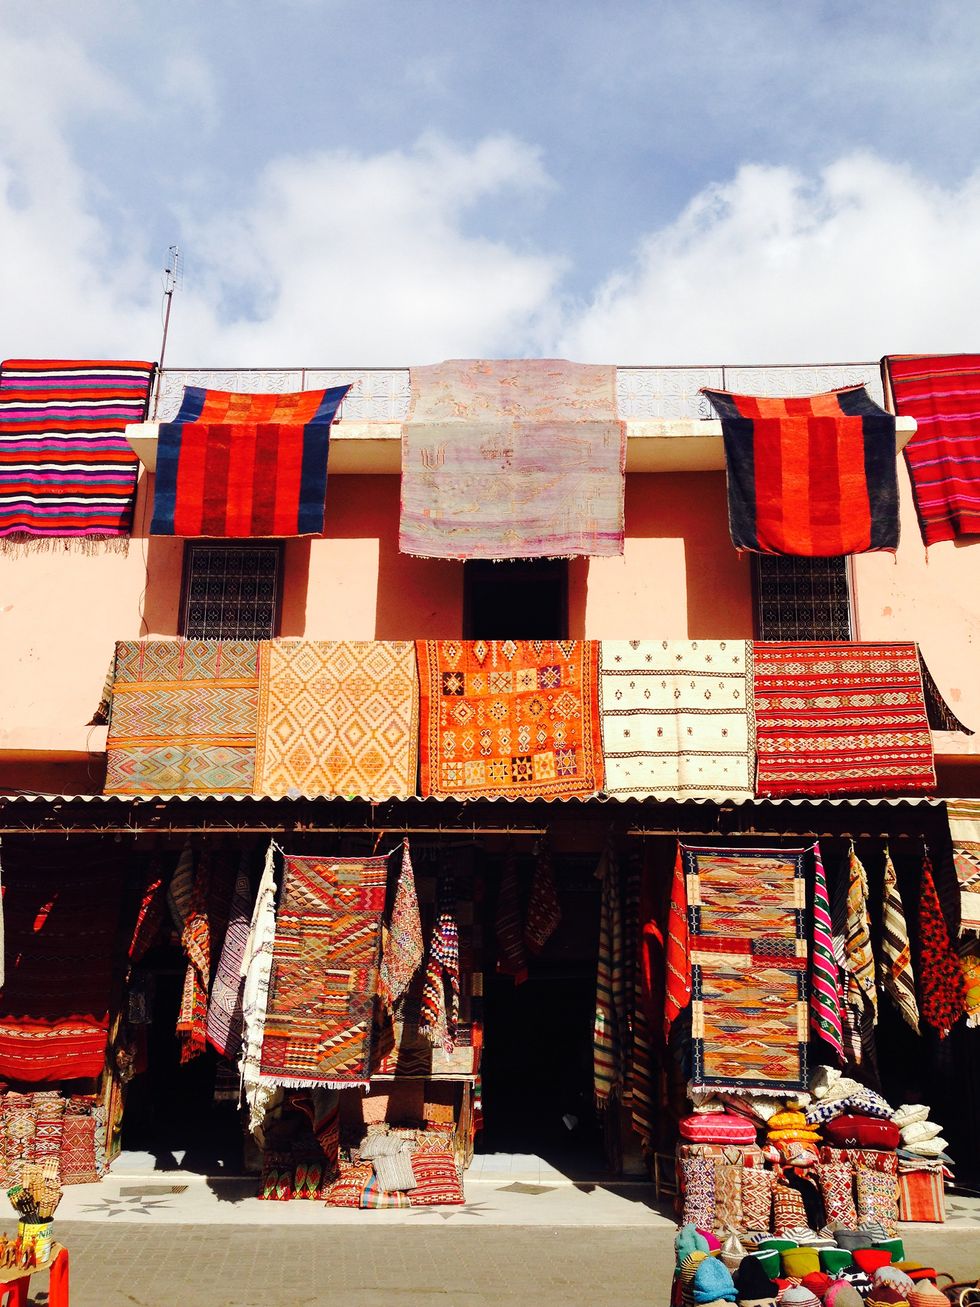 rug shop in marrakech medina, morocco